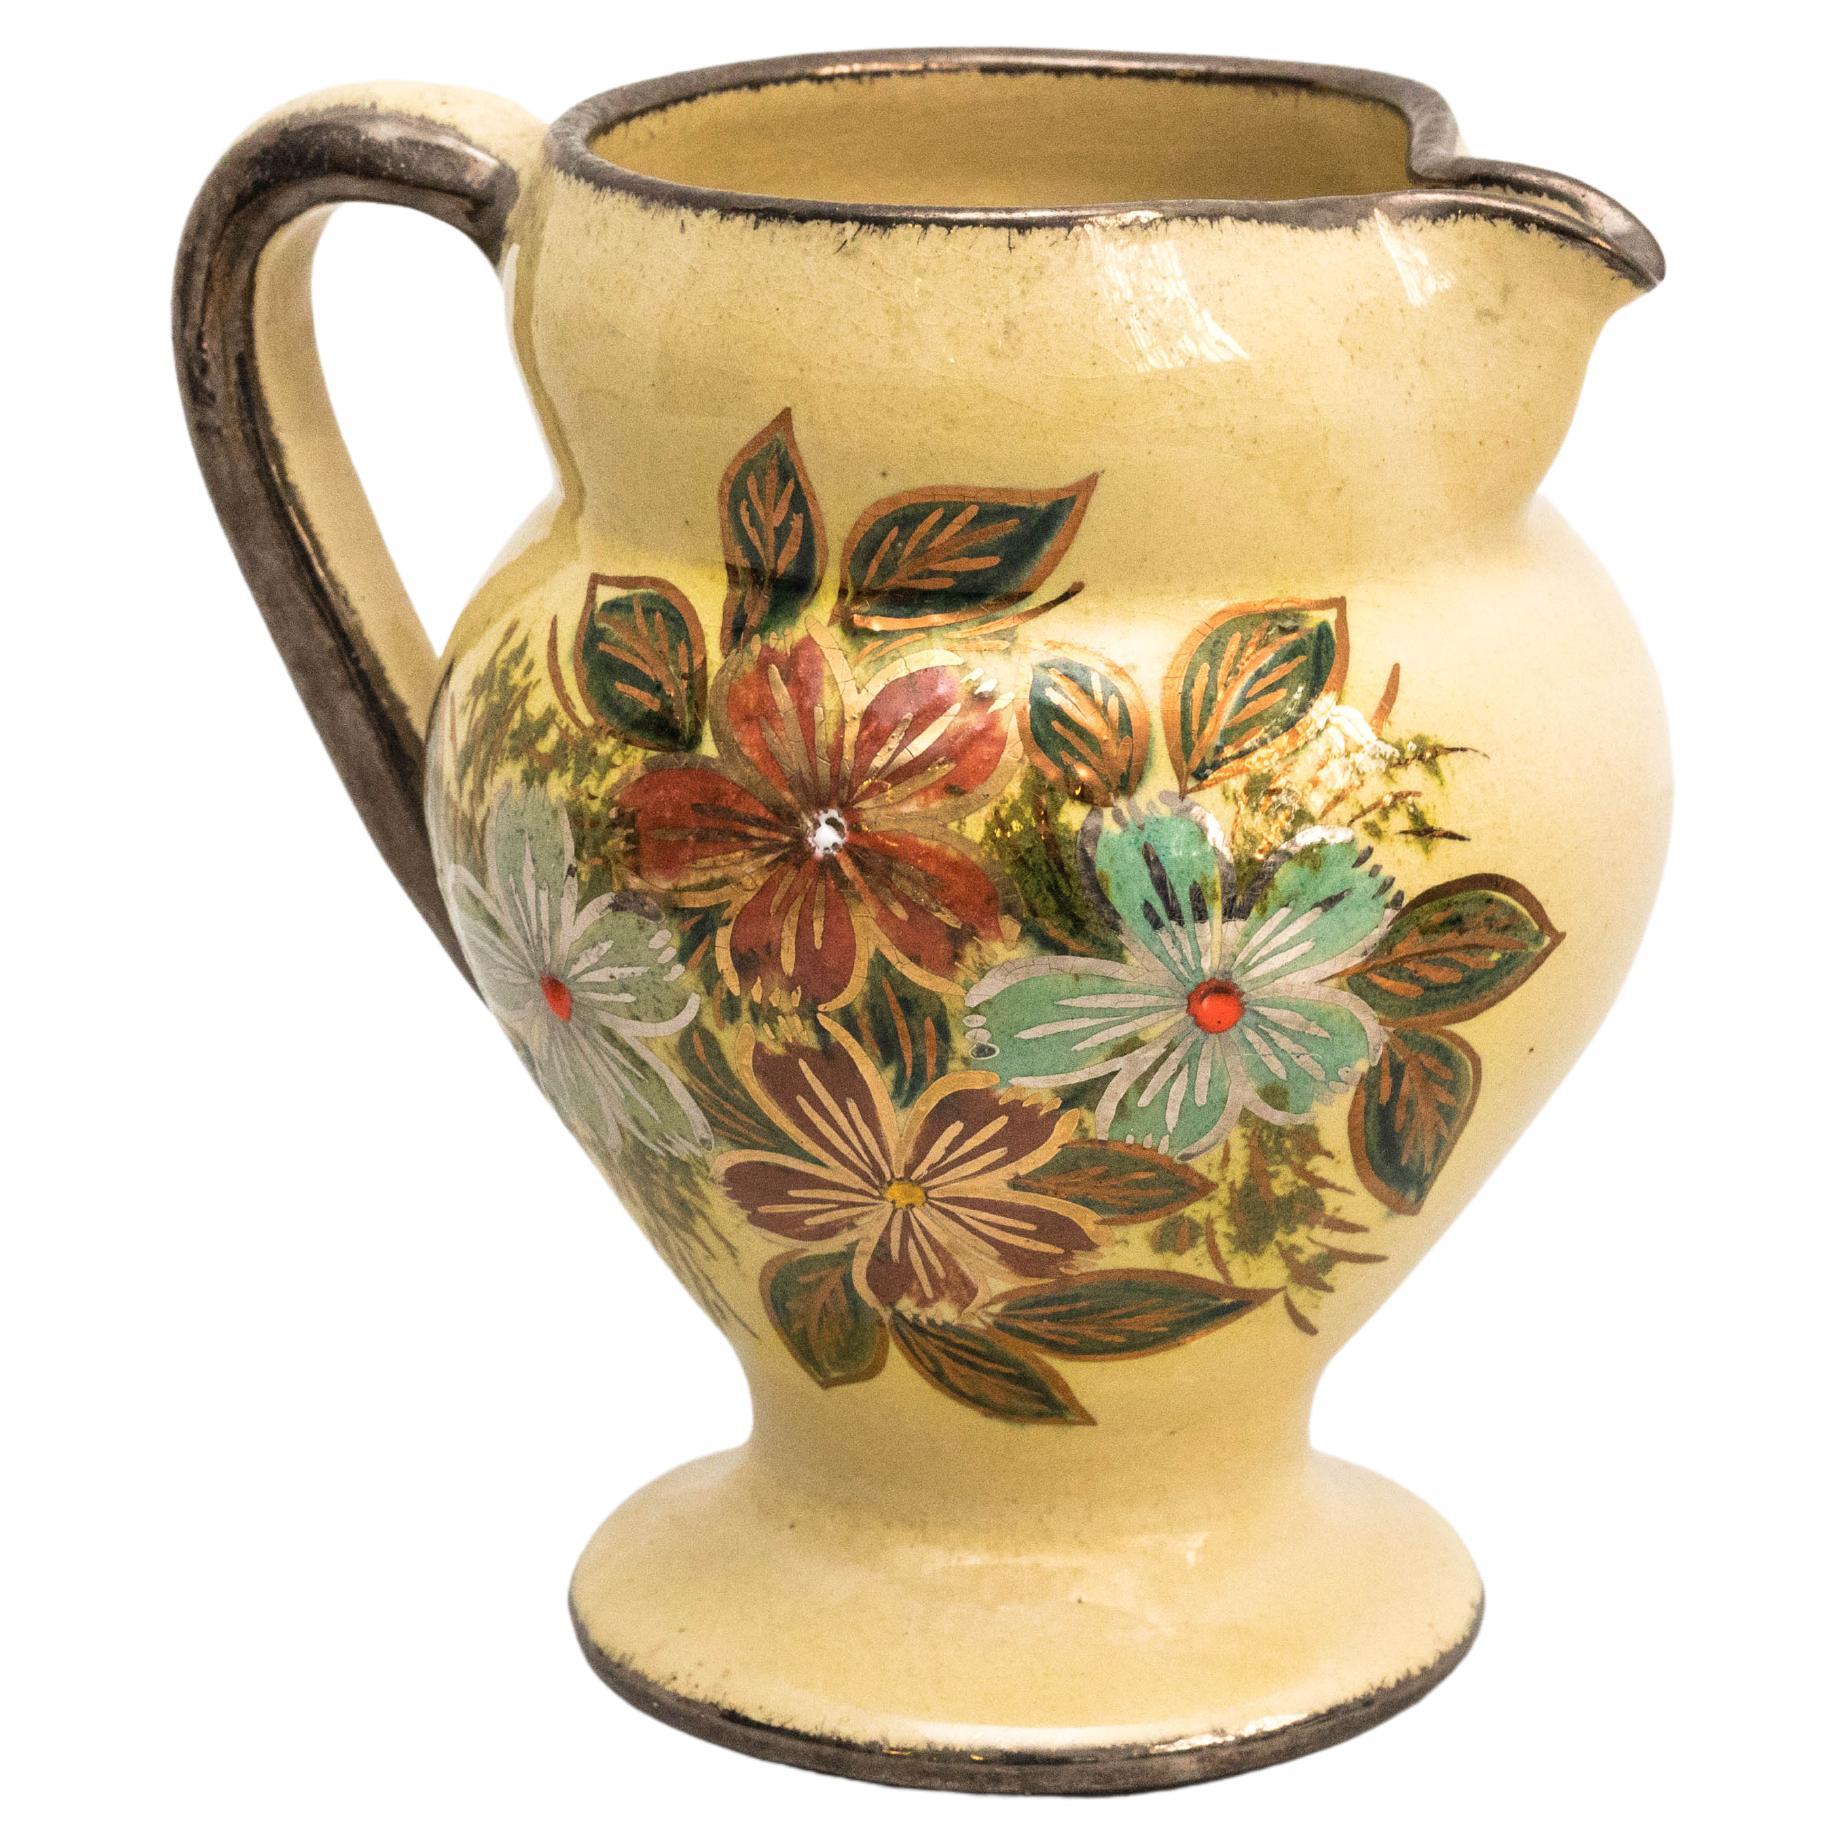 Vase en céramique peint à la main par l'artiste catalane Diaz Costa, datant d'environ 1960